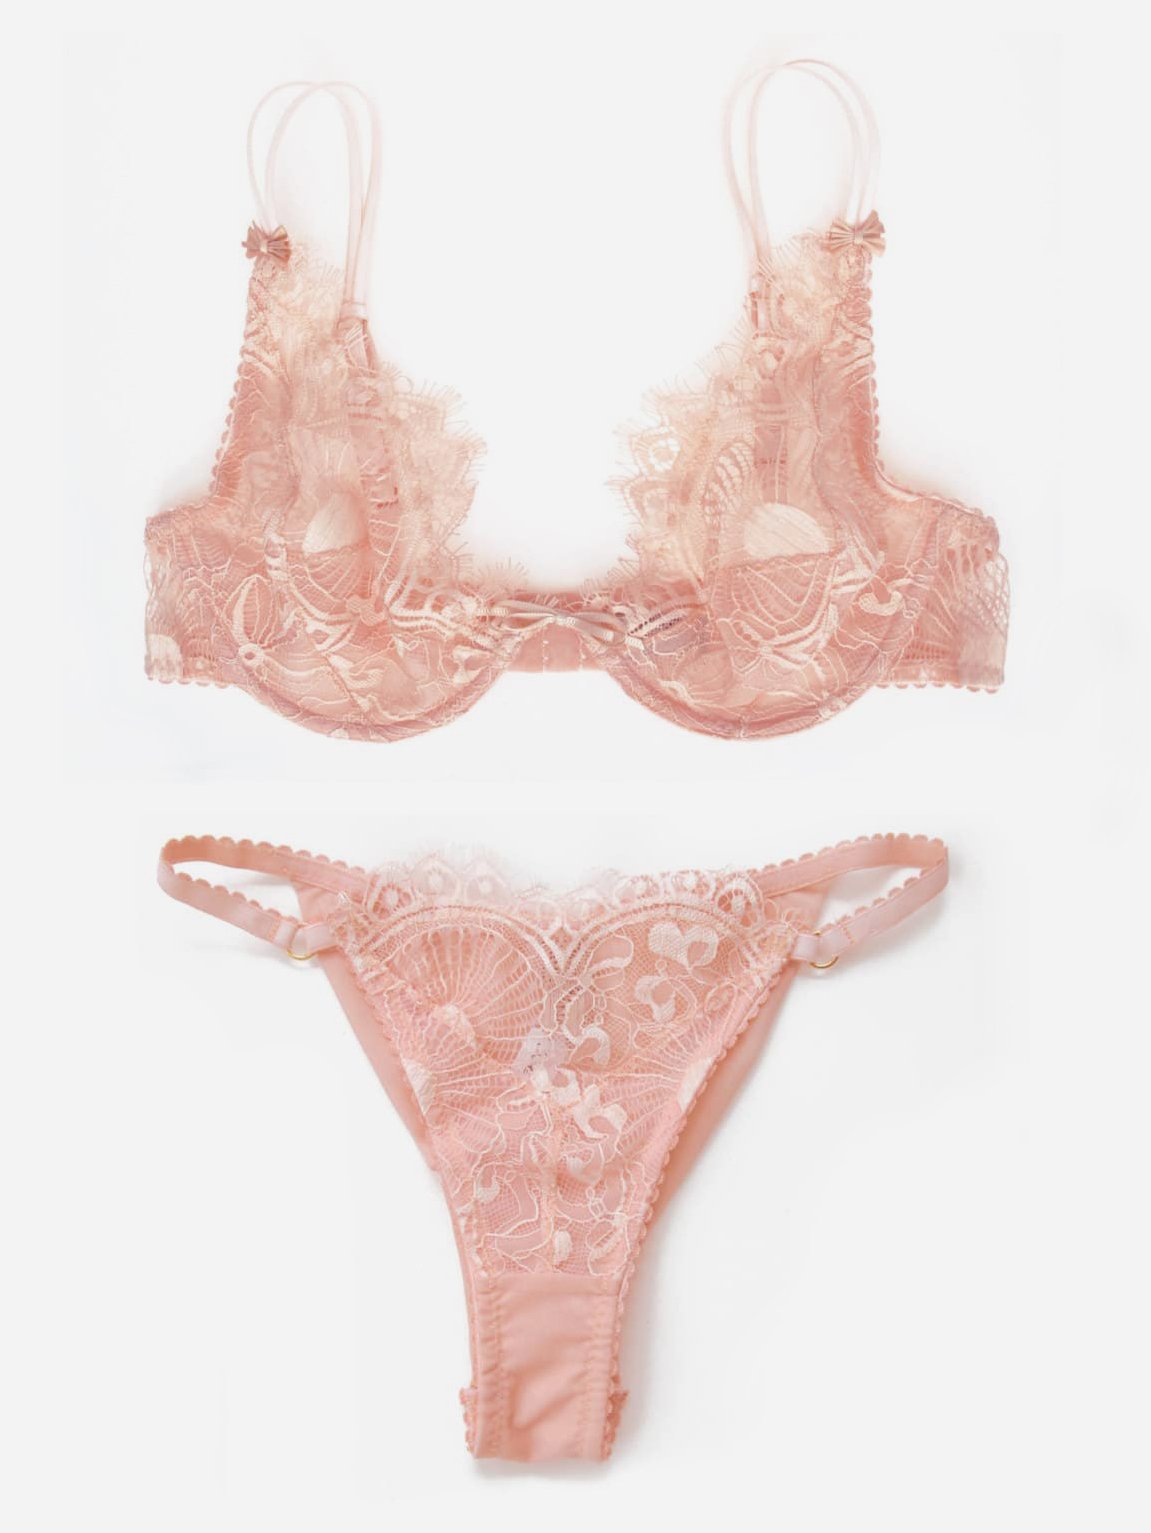 Pink chantilly lace bra, panty, garter belt lingerie set - Sexy